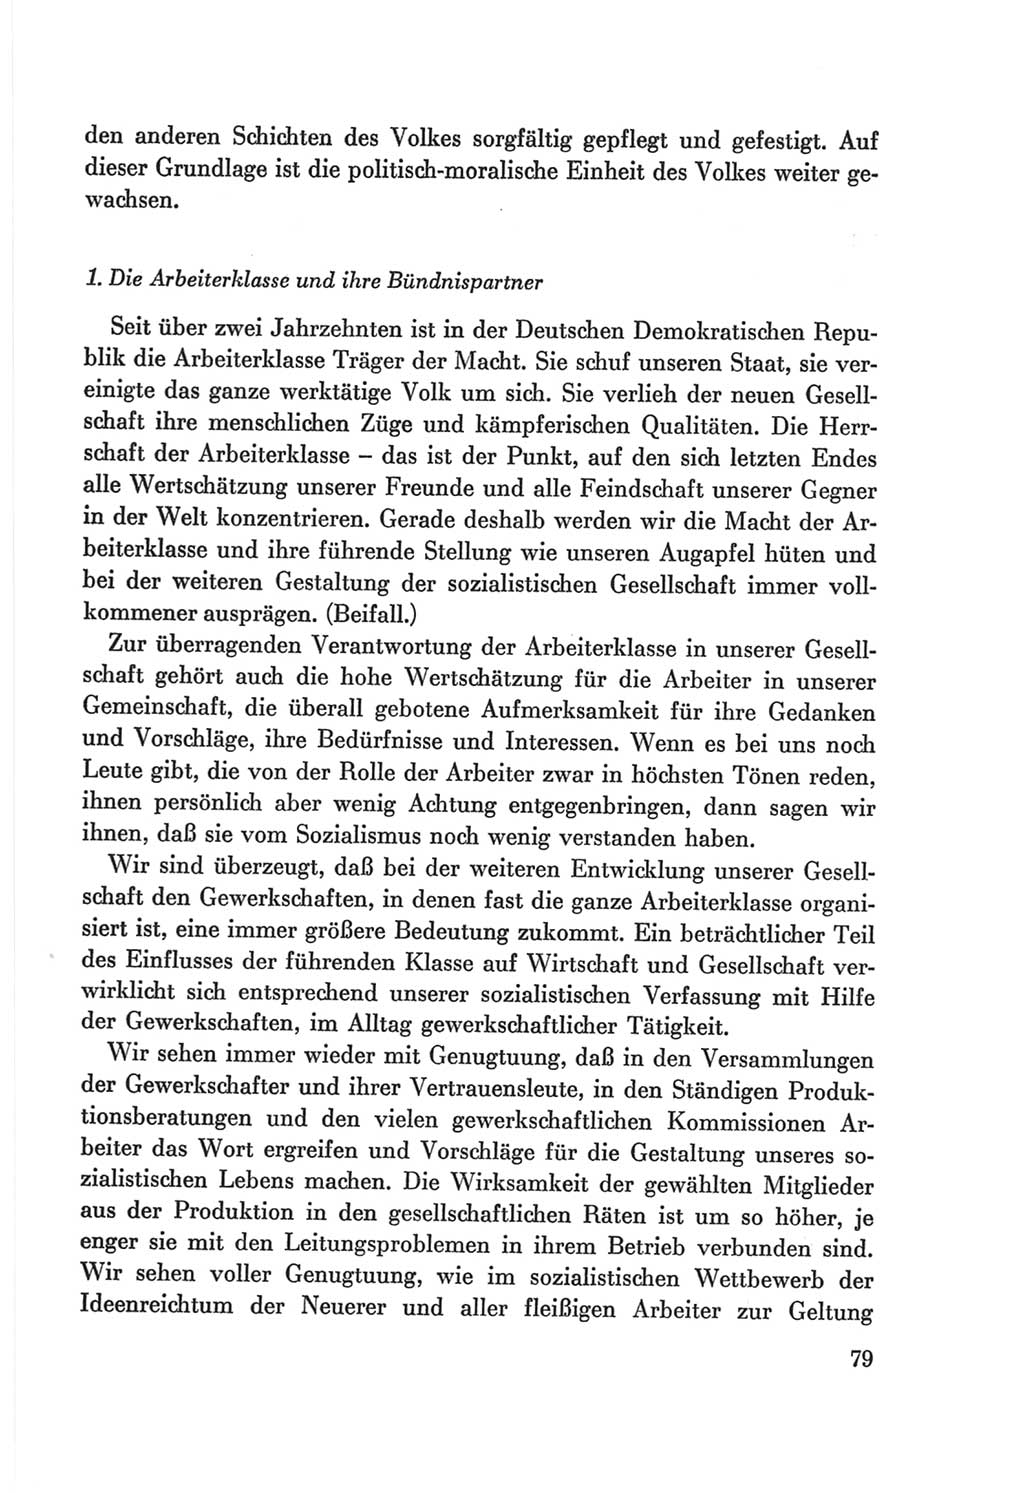 Protokoll der Verhandlungen des Ⅷ. Parteitages der Sozialistischen Einheitspartei Deutschlands (SED) [Deutsche Demokratische Republik (DDR)] 1971, Band 1, Seite 79 (Prot. Verh. Ⅷ. PT SED DDR 1971, Bd. 1, S. 79)